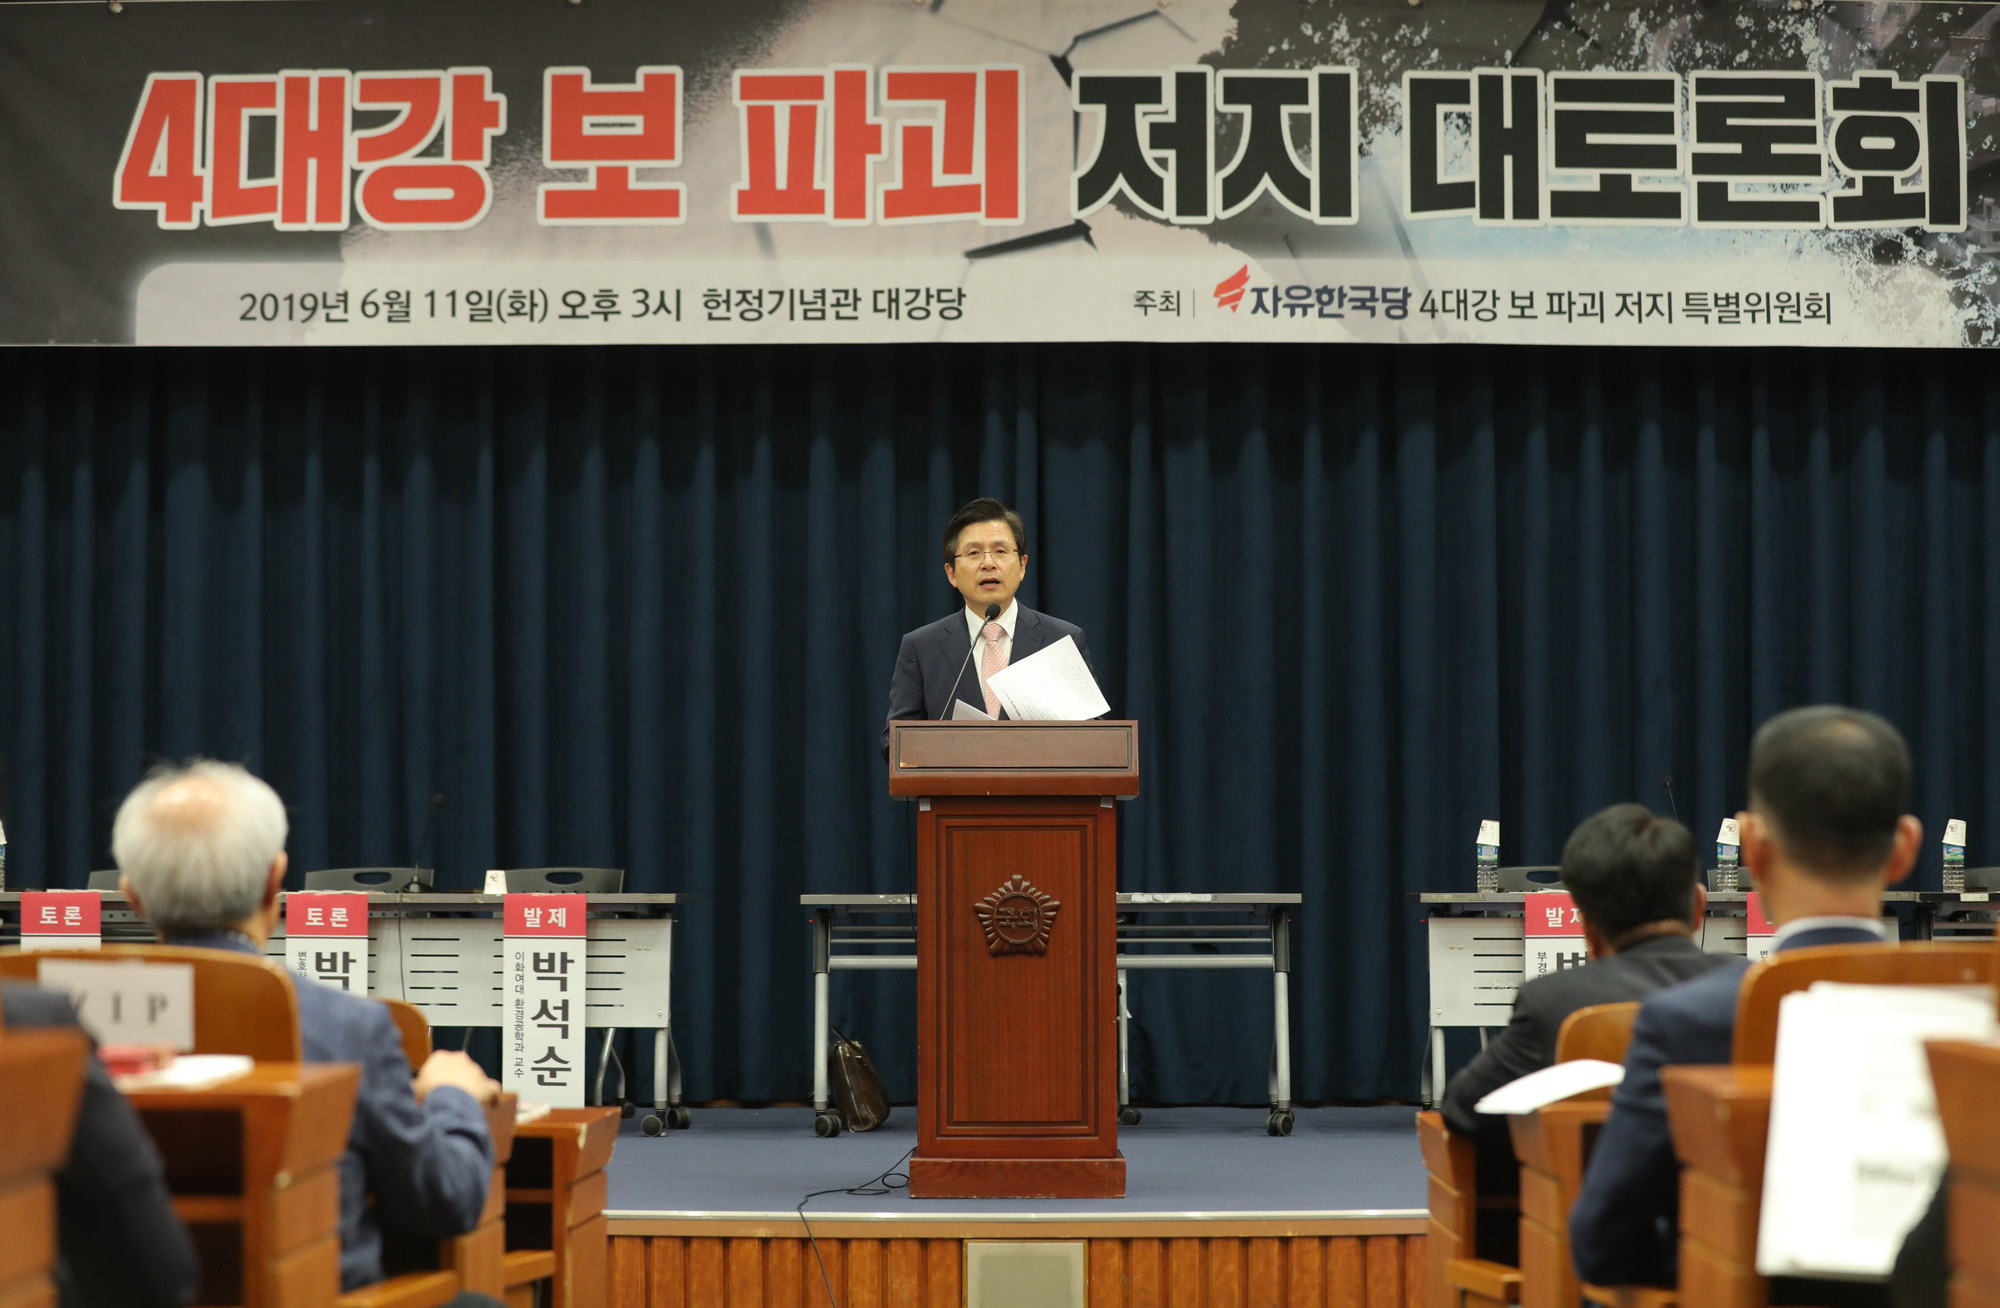 자유한국당;4대강보파괴저지대토론회;황교안대표